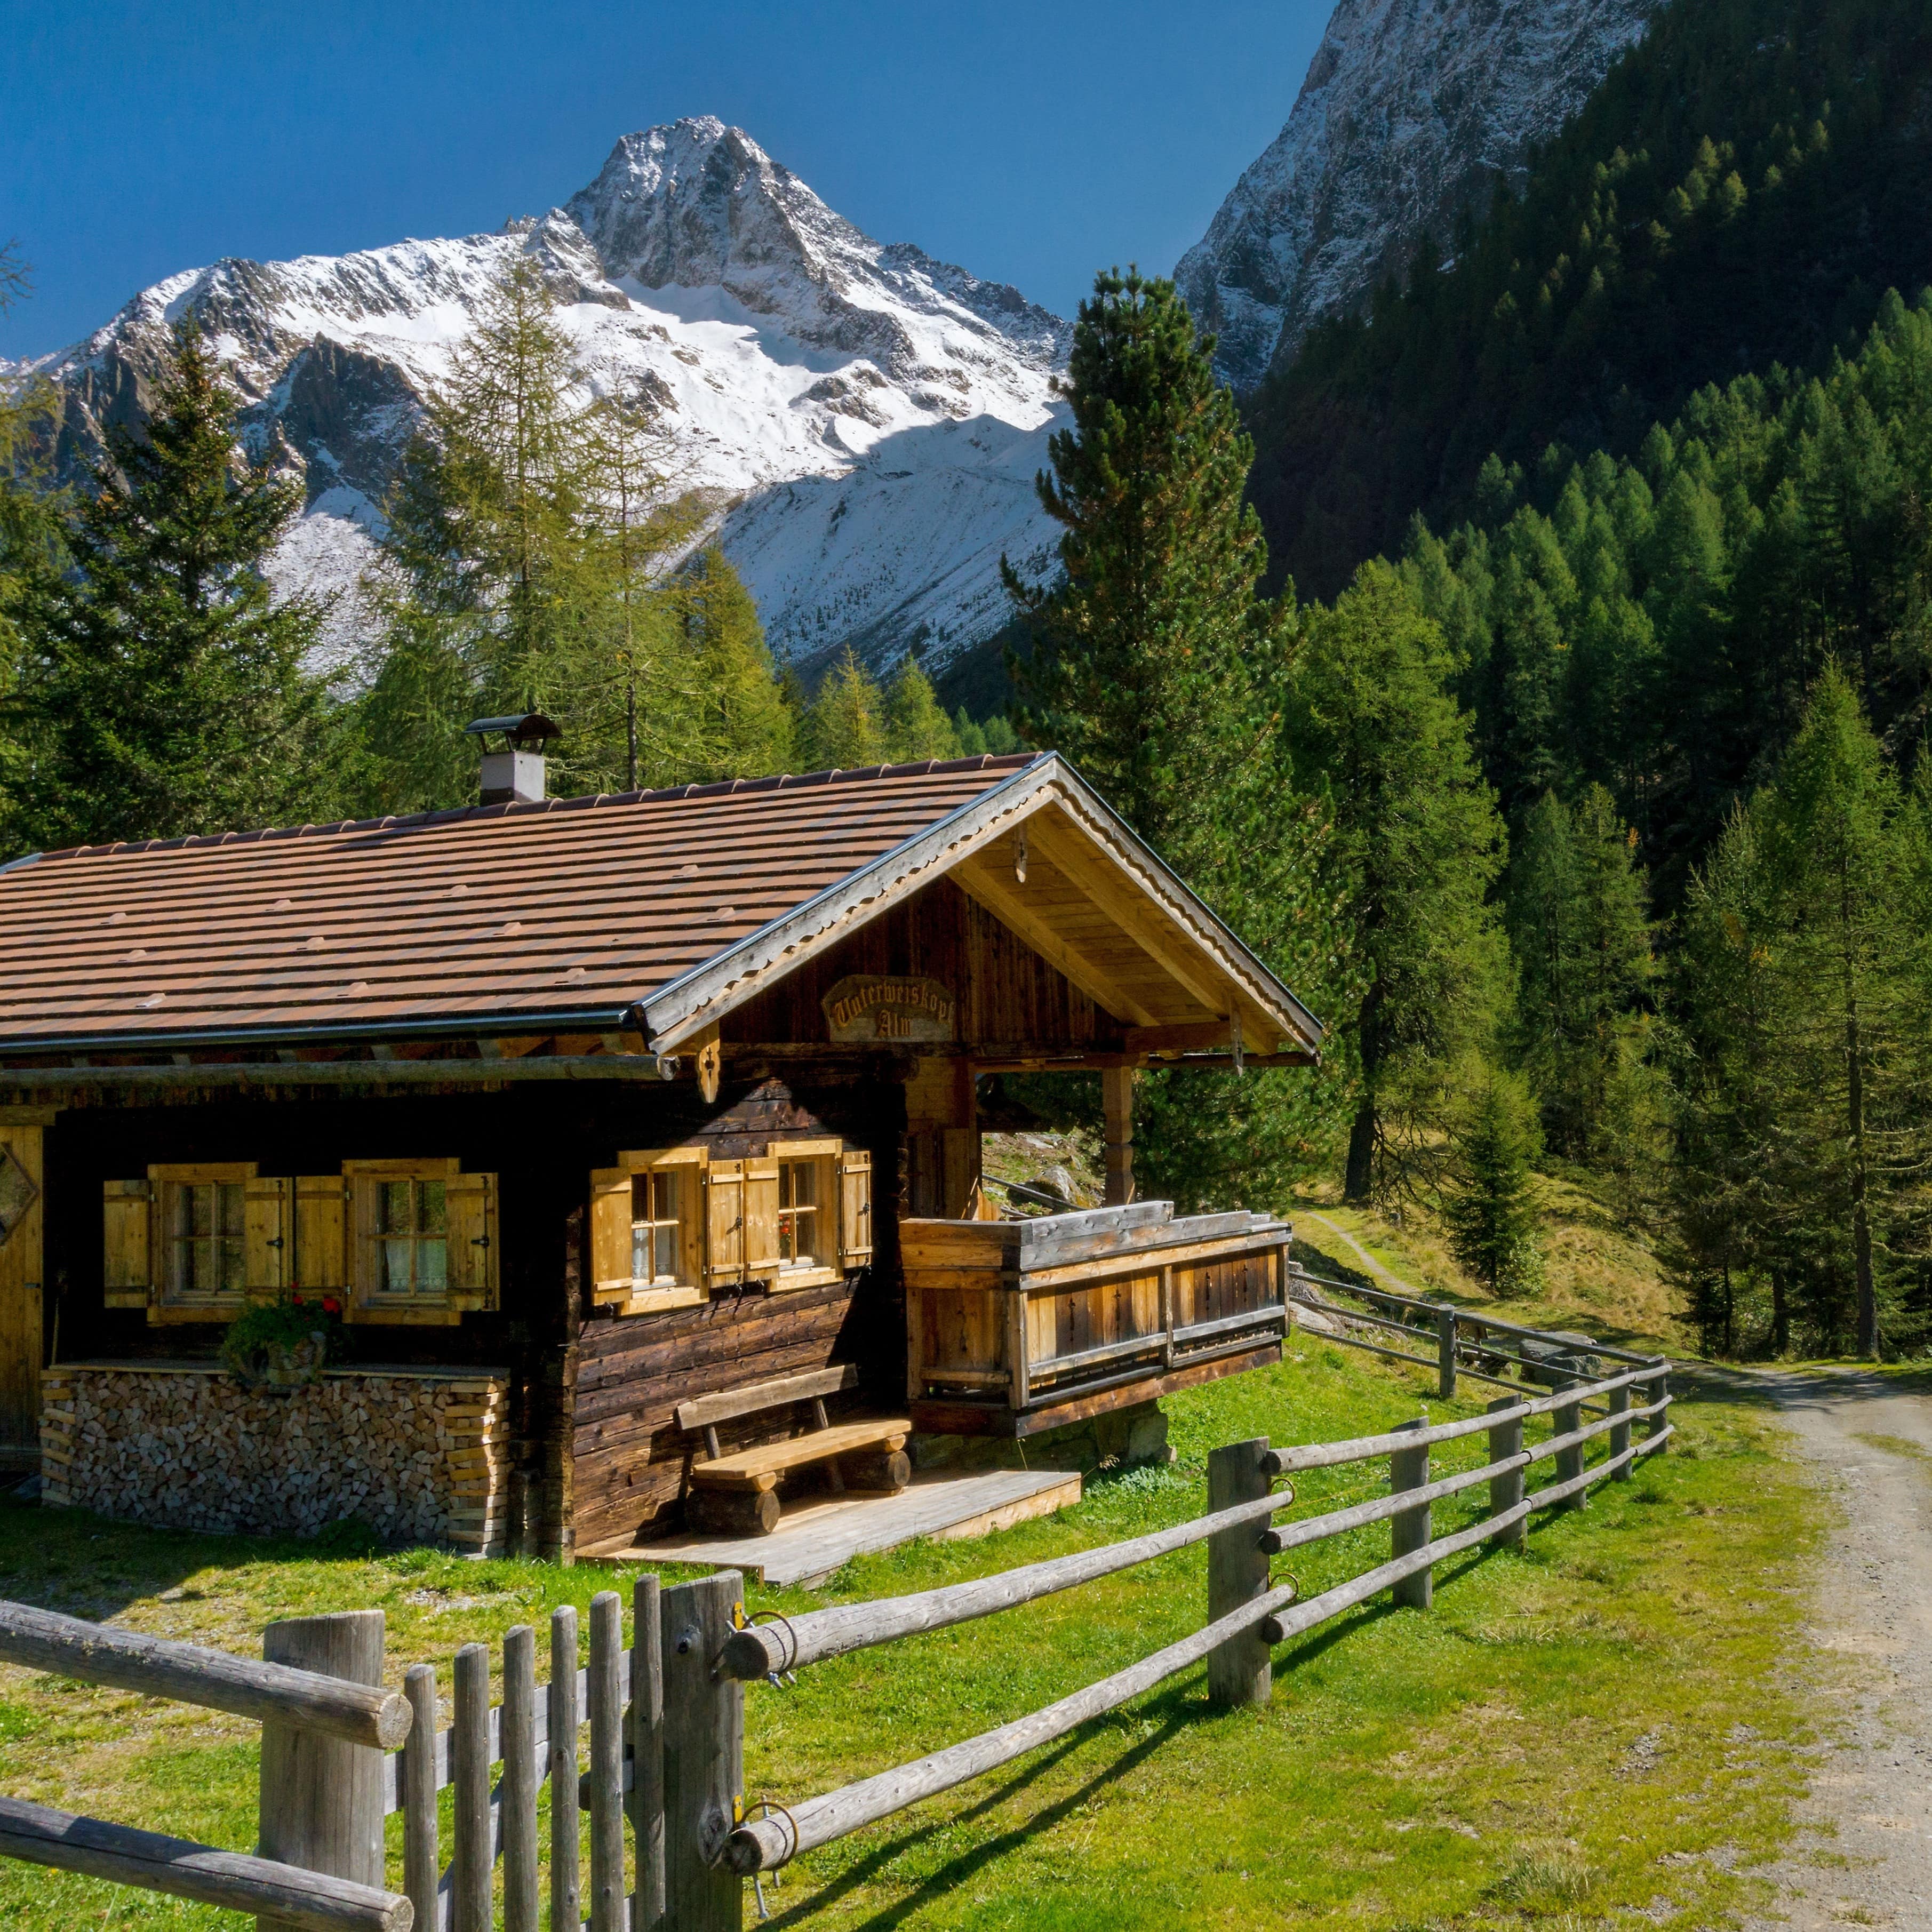 Gemütliche Holzhütte in Österreich vor einem mächtigen Berggipfel